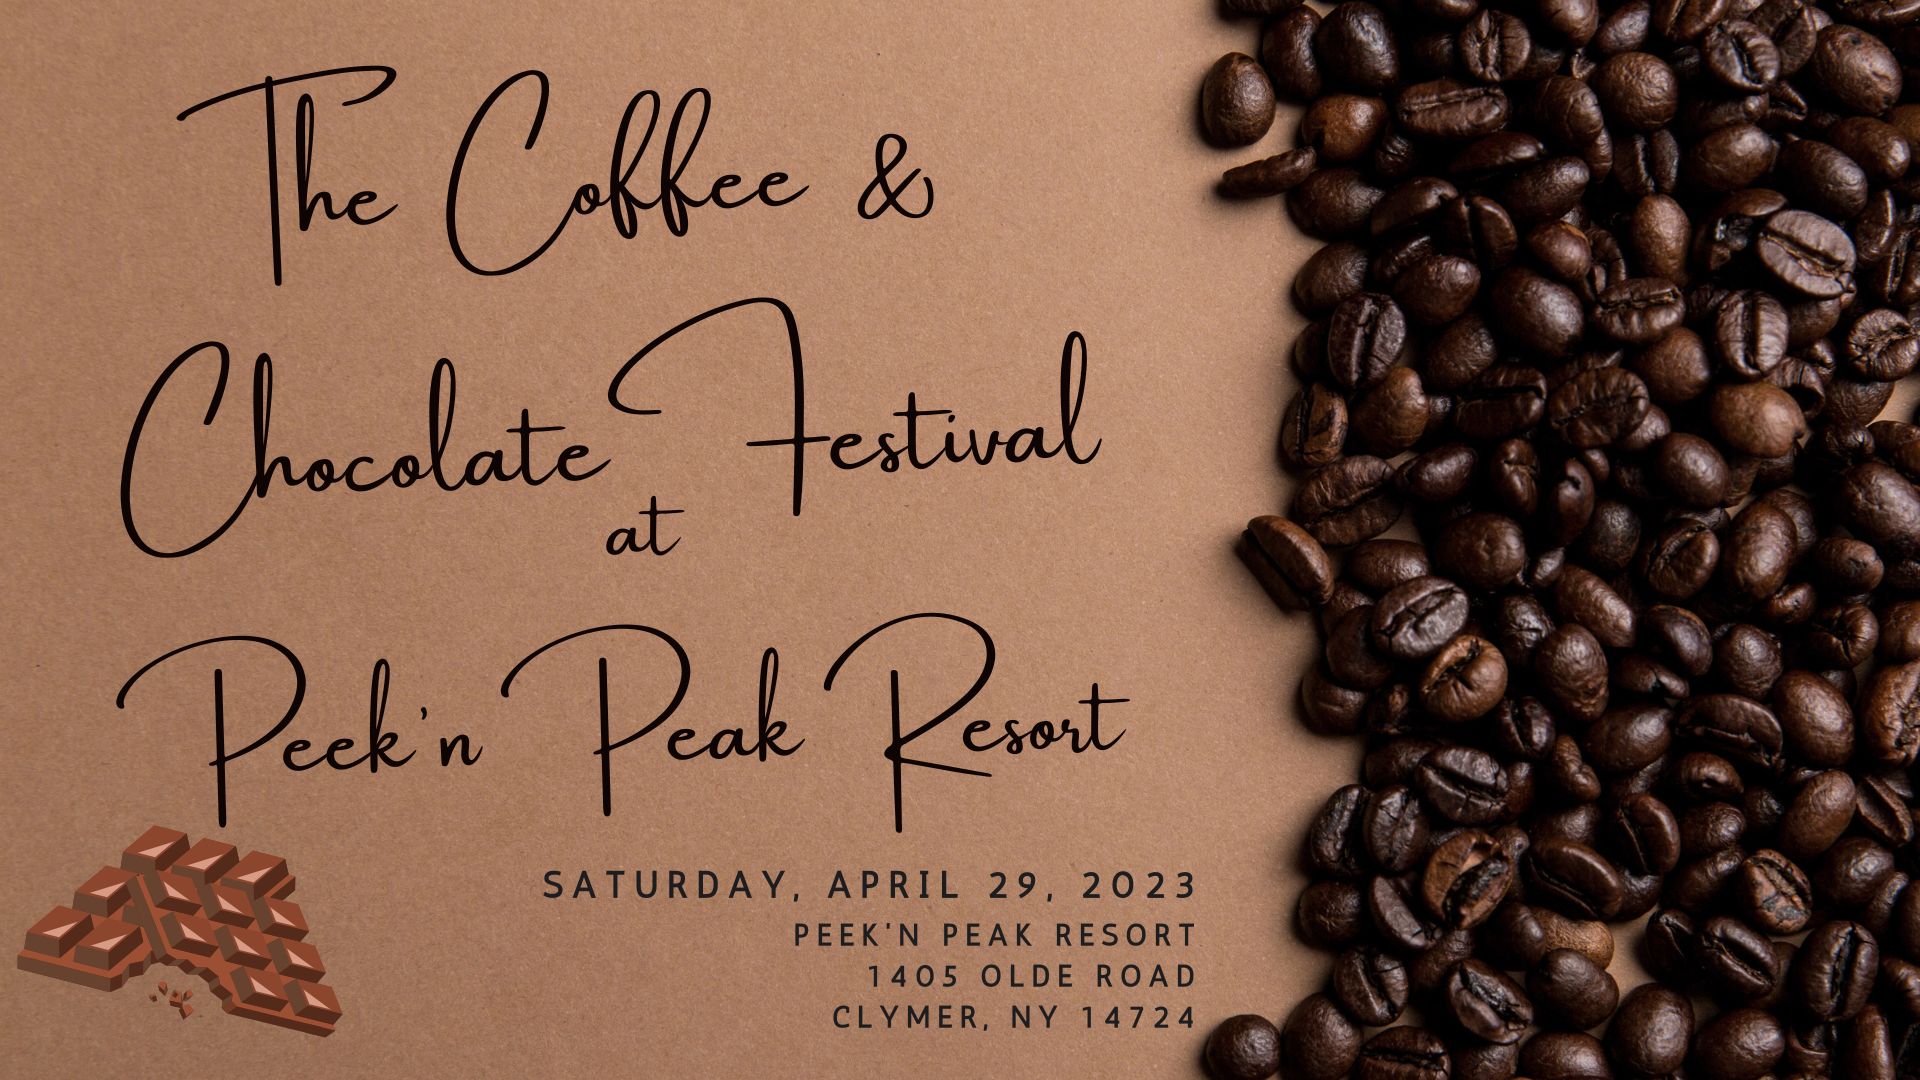 The Coffee & Chocolate Festival at Peek'n Peak Resort